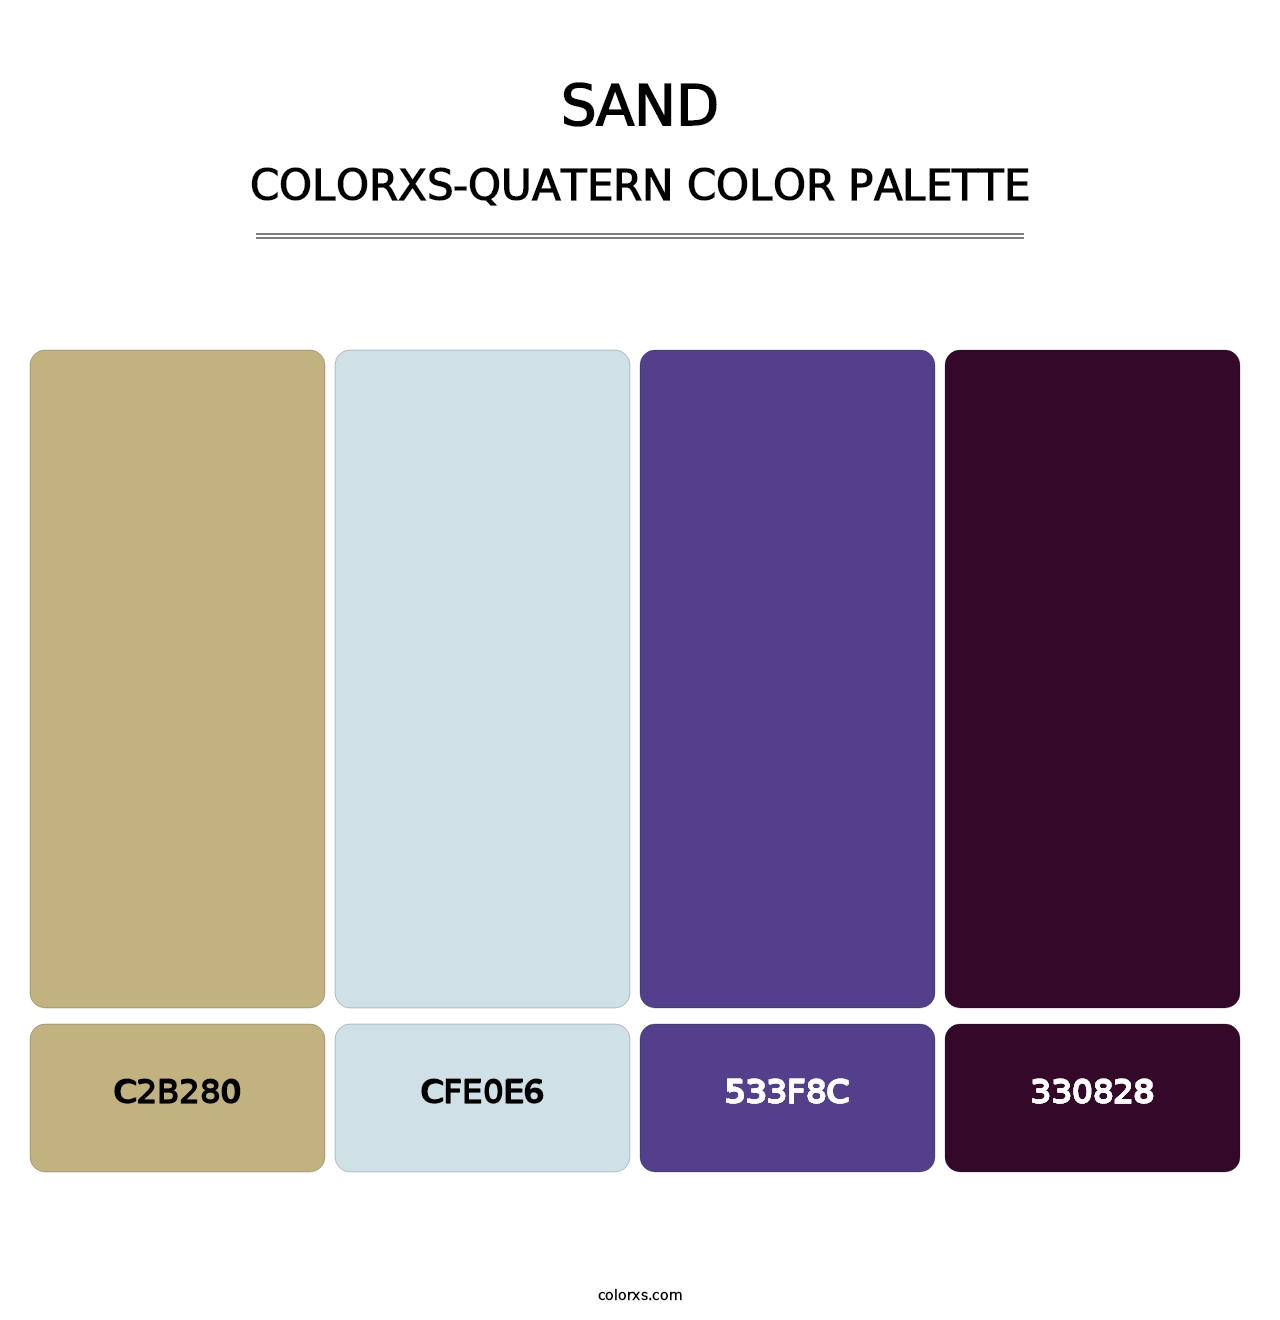 Sand - Colorxs Quatern Palette